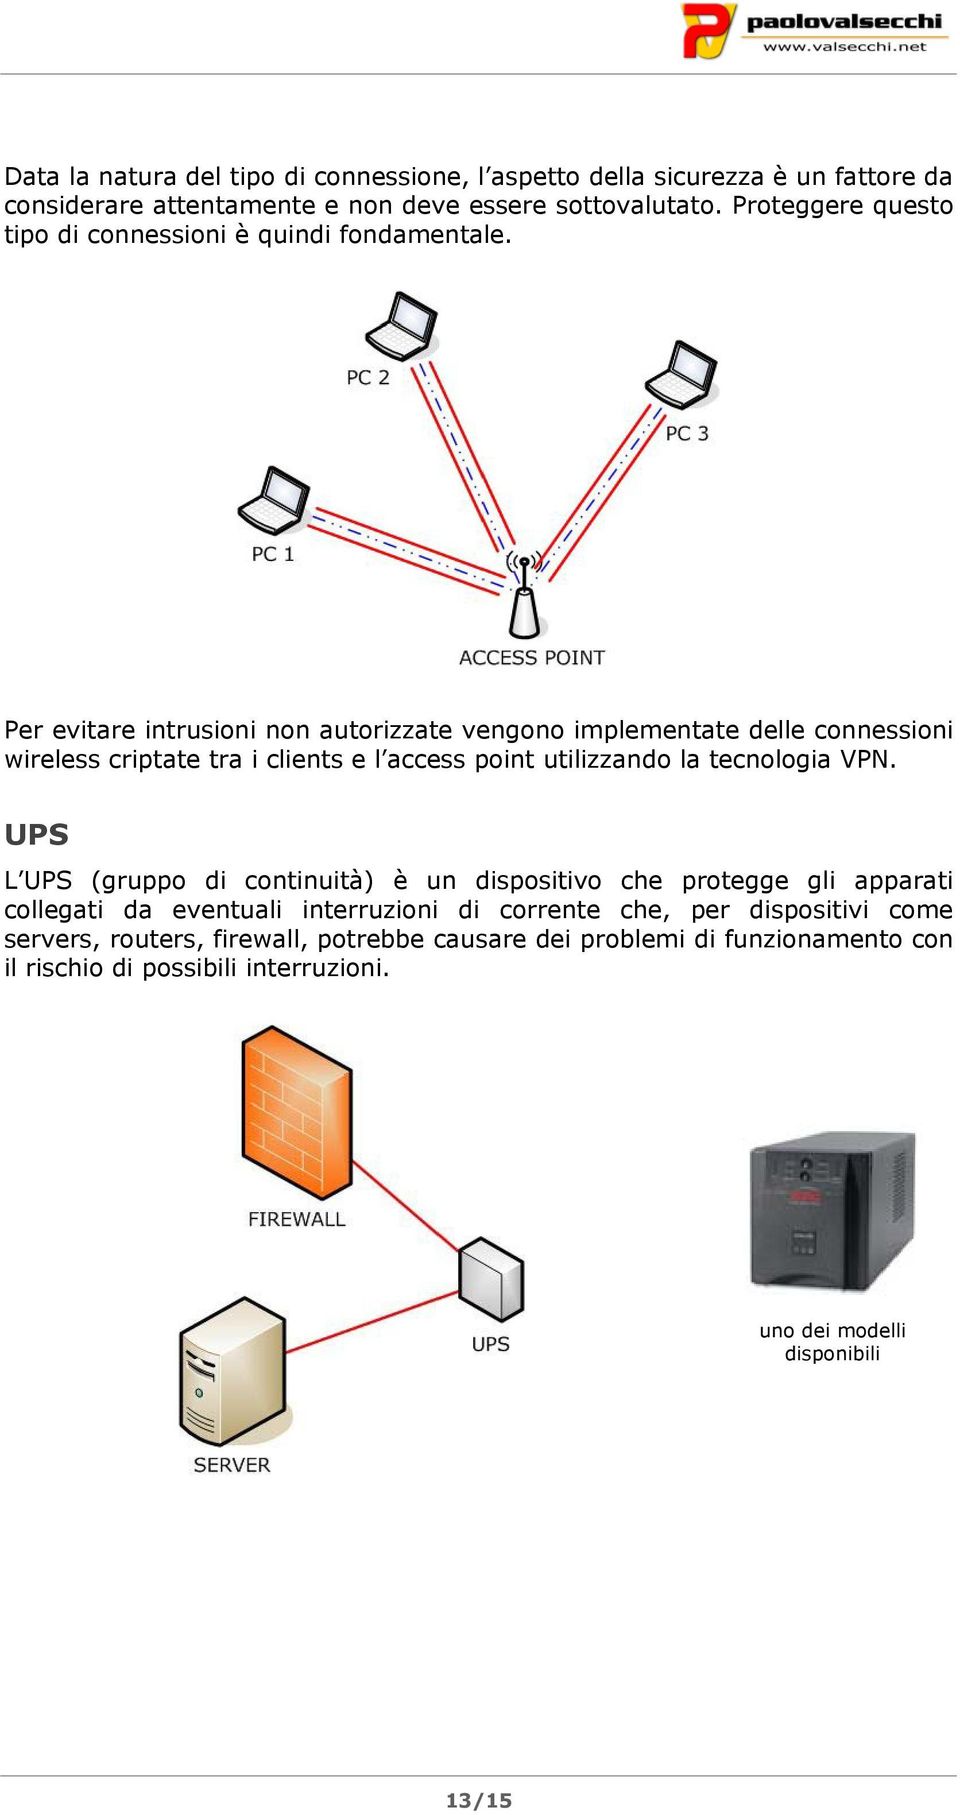 Per evitare intrusioni non autorizzate vengono implementate delle connessioni wireless criptate tra i clients e l access point utilizzando la tecnologia VPN.